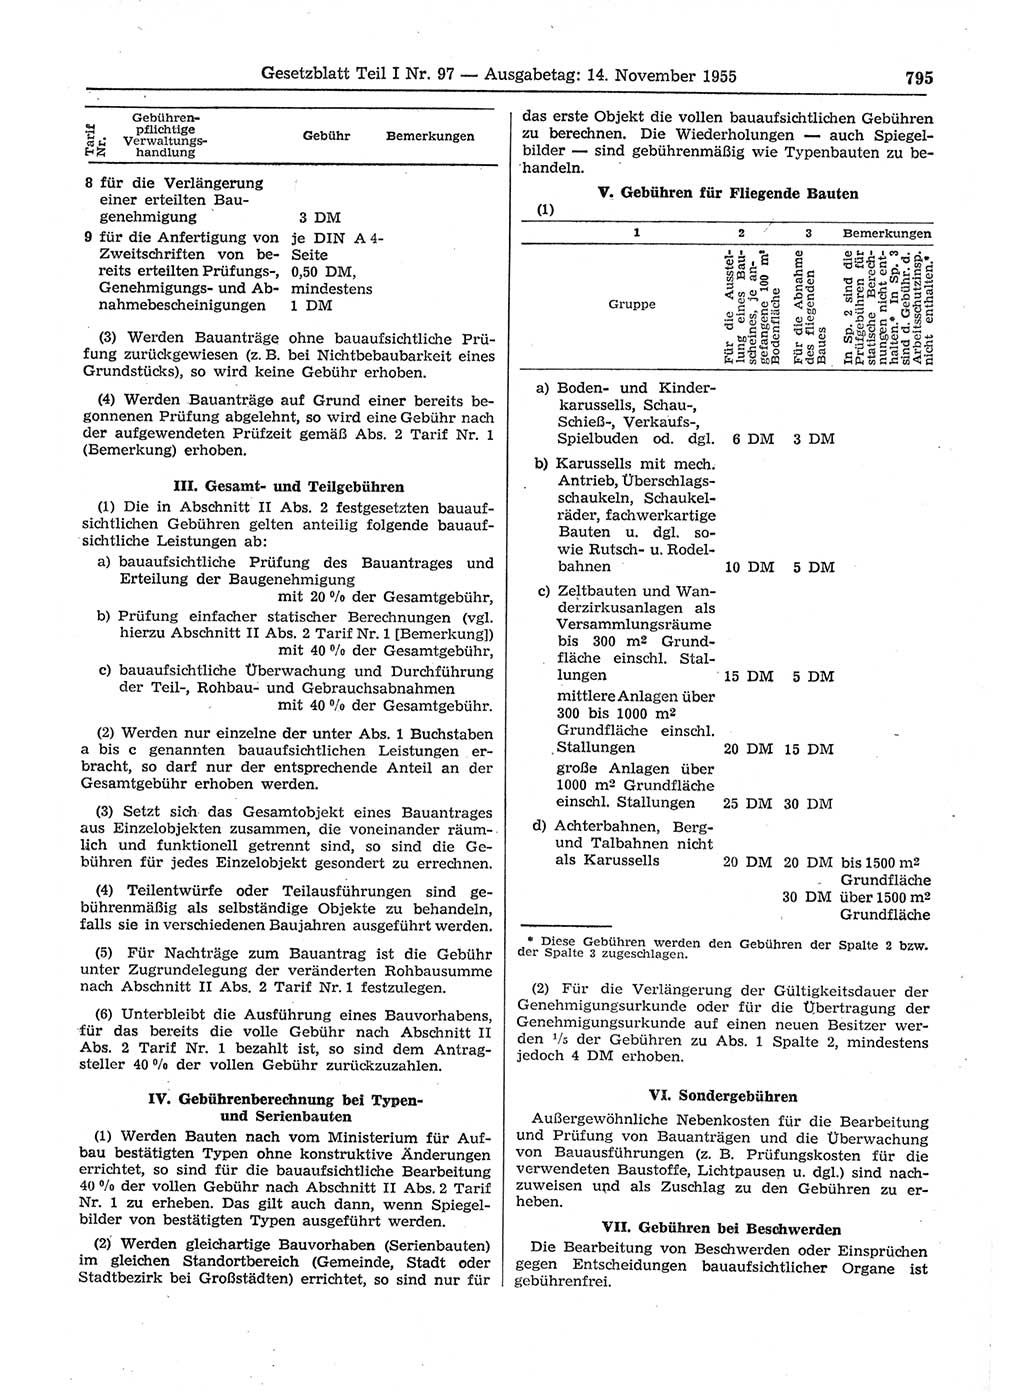 Gesetzblatt (GBl.) der Deutschen Demokratischen Republik (DDR) Teil Ⅰ 1955, Seite 795 (GBl. DDR Ⅰ 1955, S. 795)